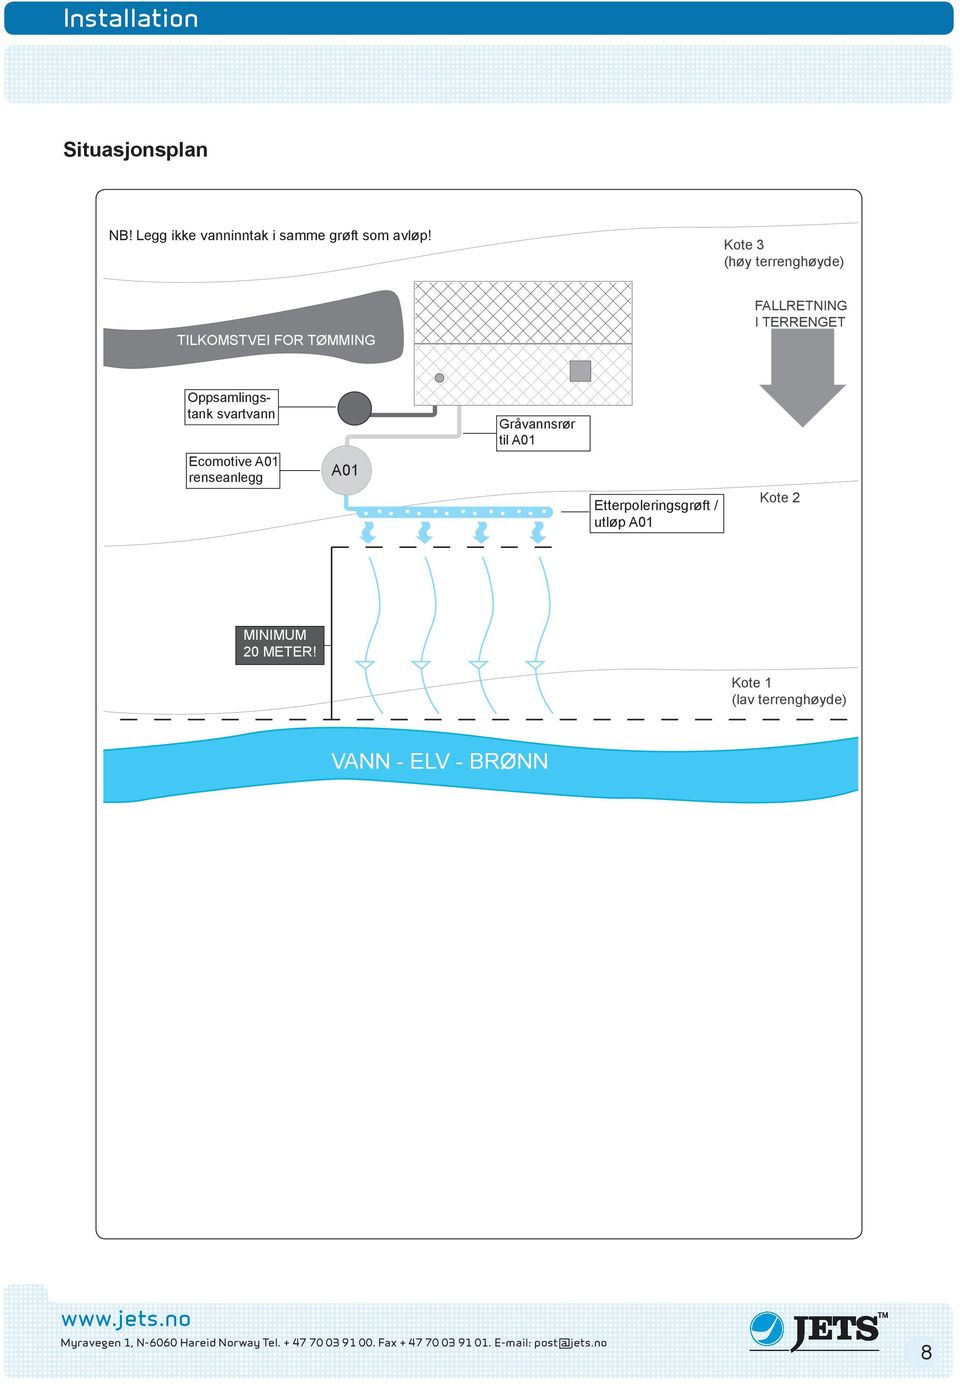 Oppsamlingstank svartvann renseanlegg A01 Gråvannsrør til A01